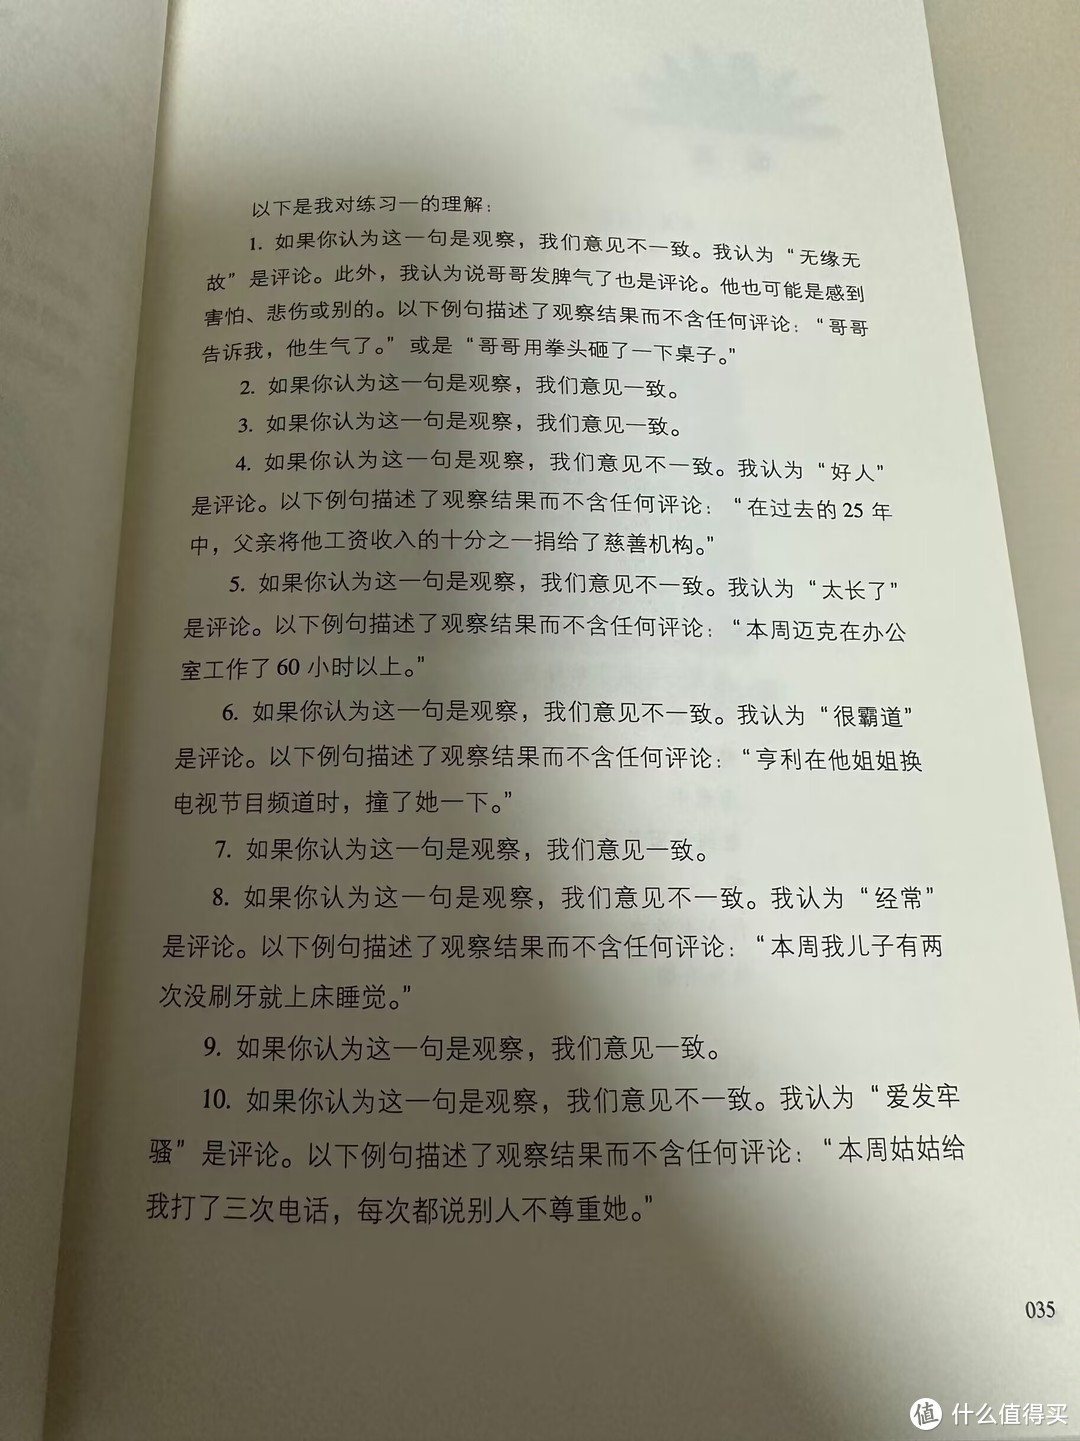 樊登推荐的一本适合父母阅读的书籍《非暴力沟通》